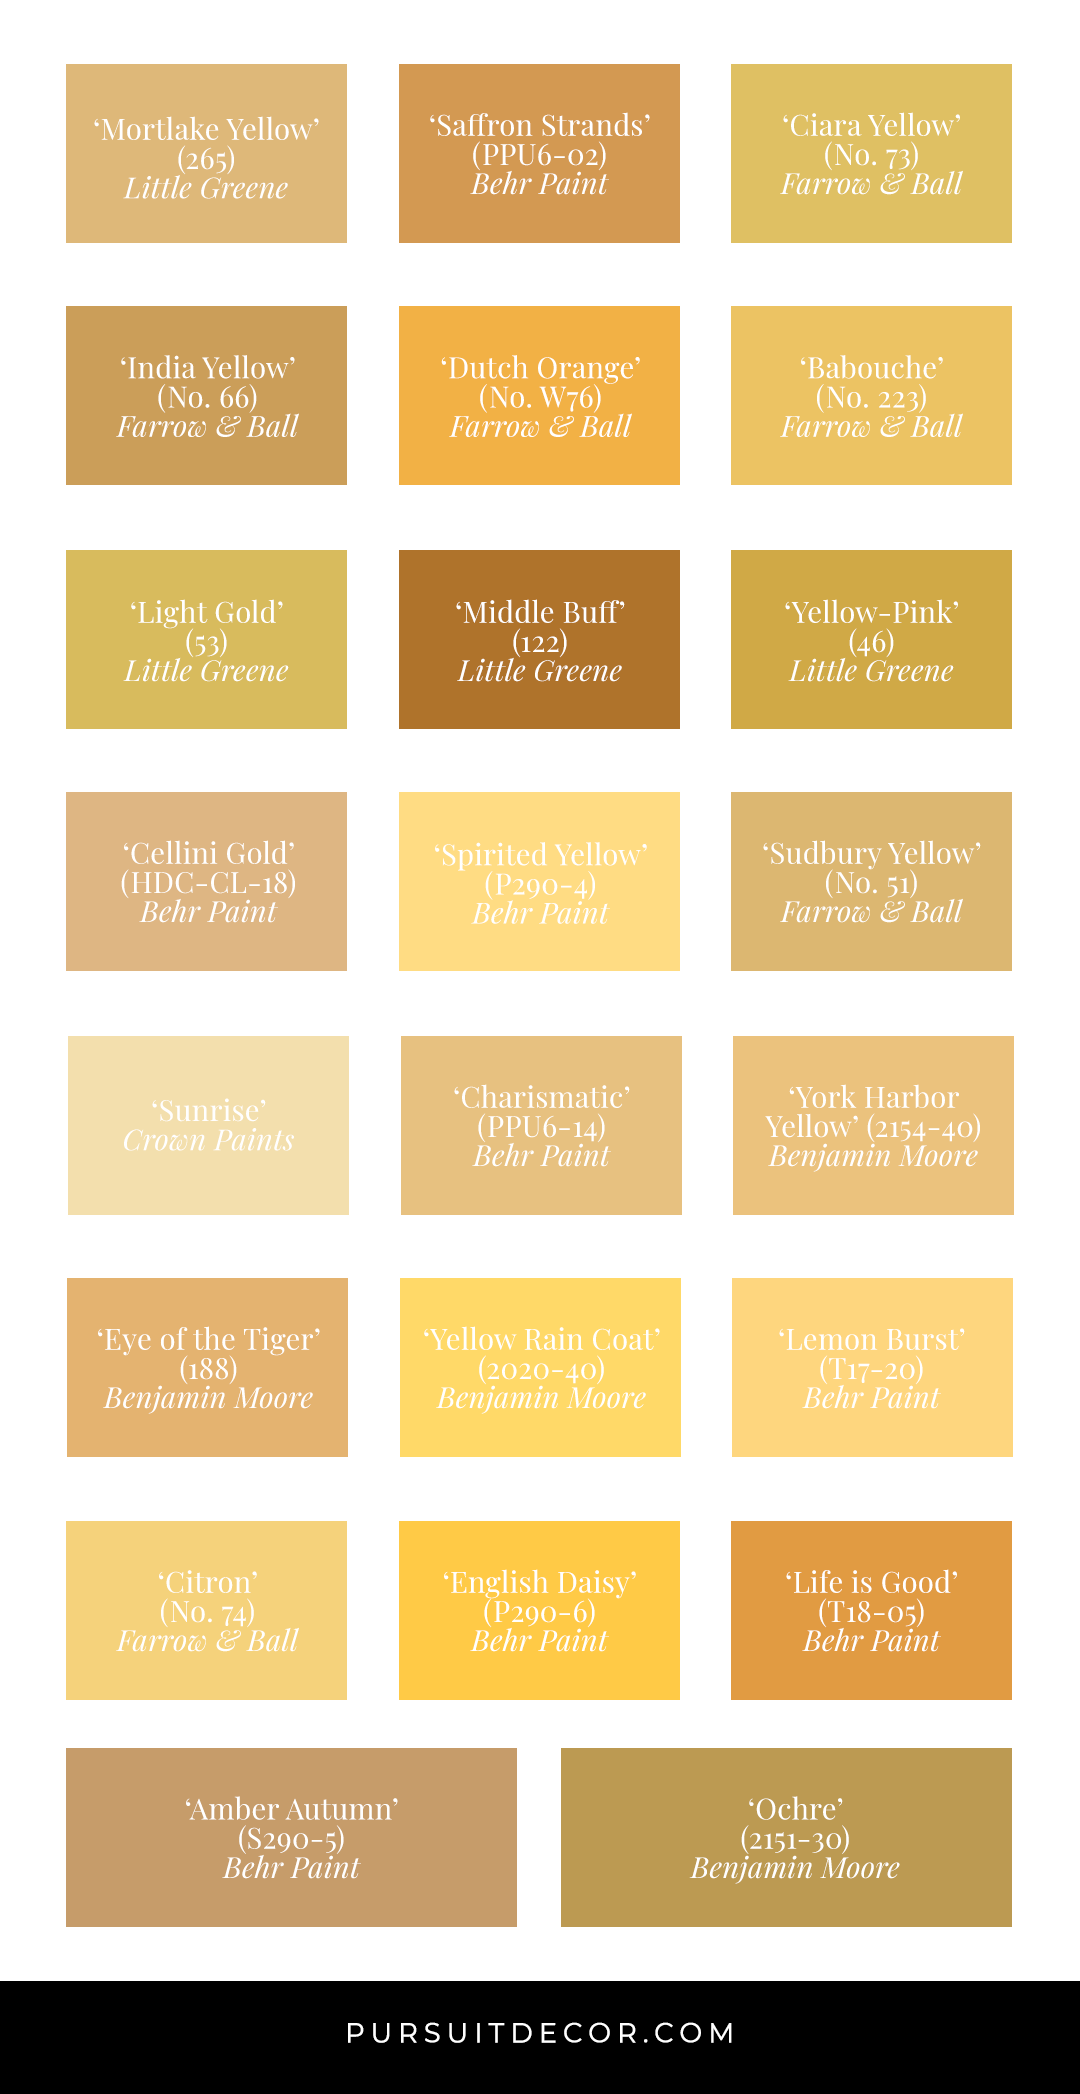 shades of yellow names